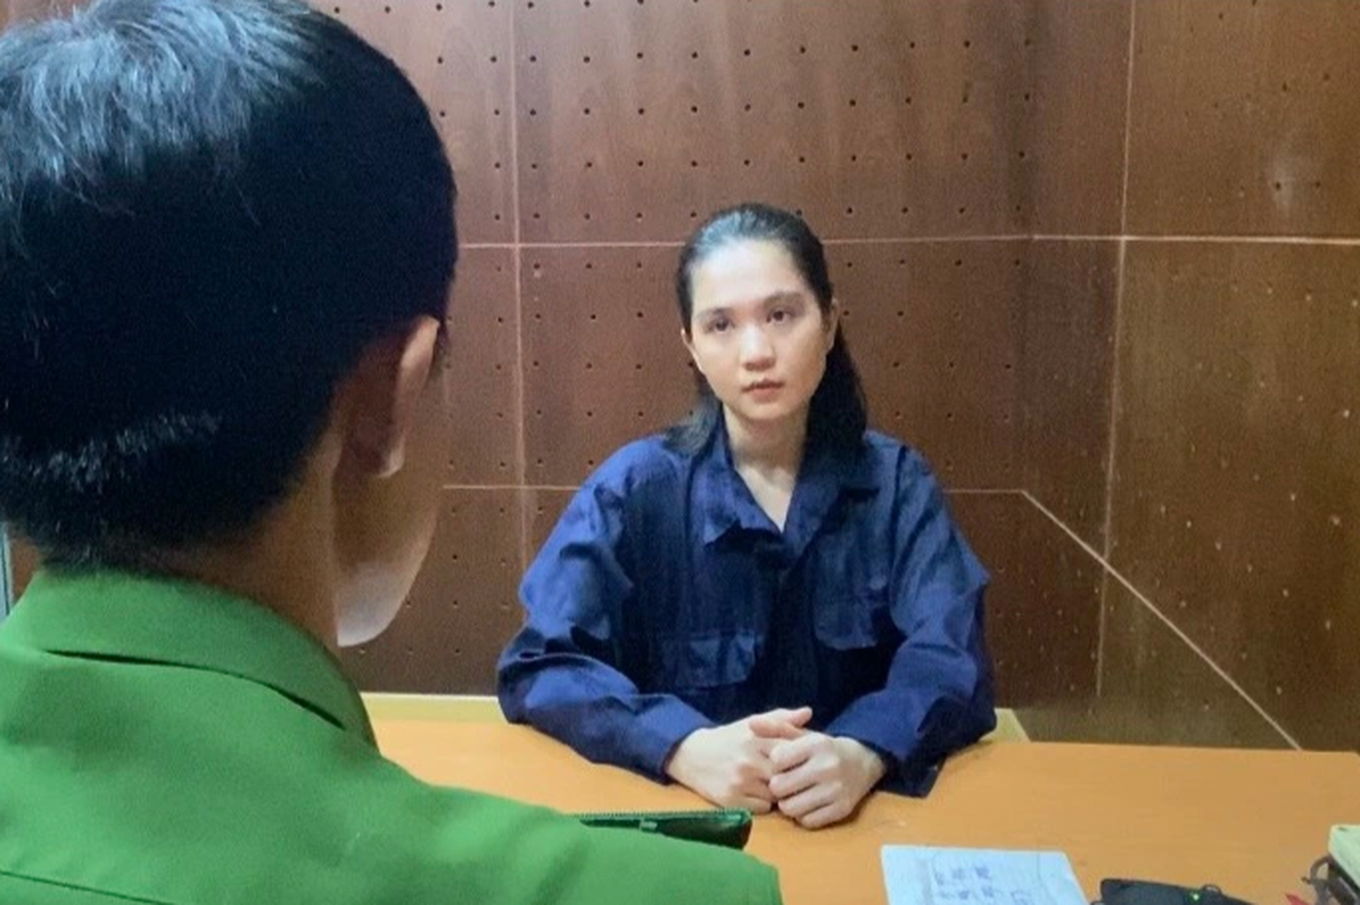 Hình ảnh hiện tại của người mẫu Ngọc Trinh (Hoa hậu Việt Nam Hoàn cầu 2011) sau hơn 2 tháng trong trại tạm giam - Ảnh 2.